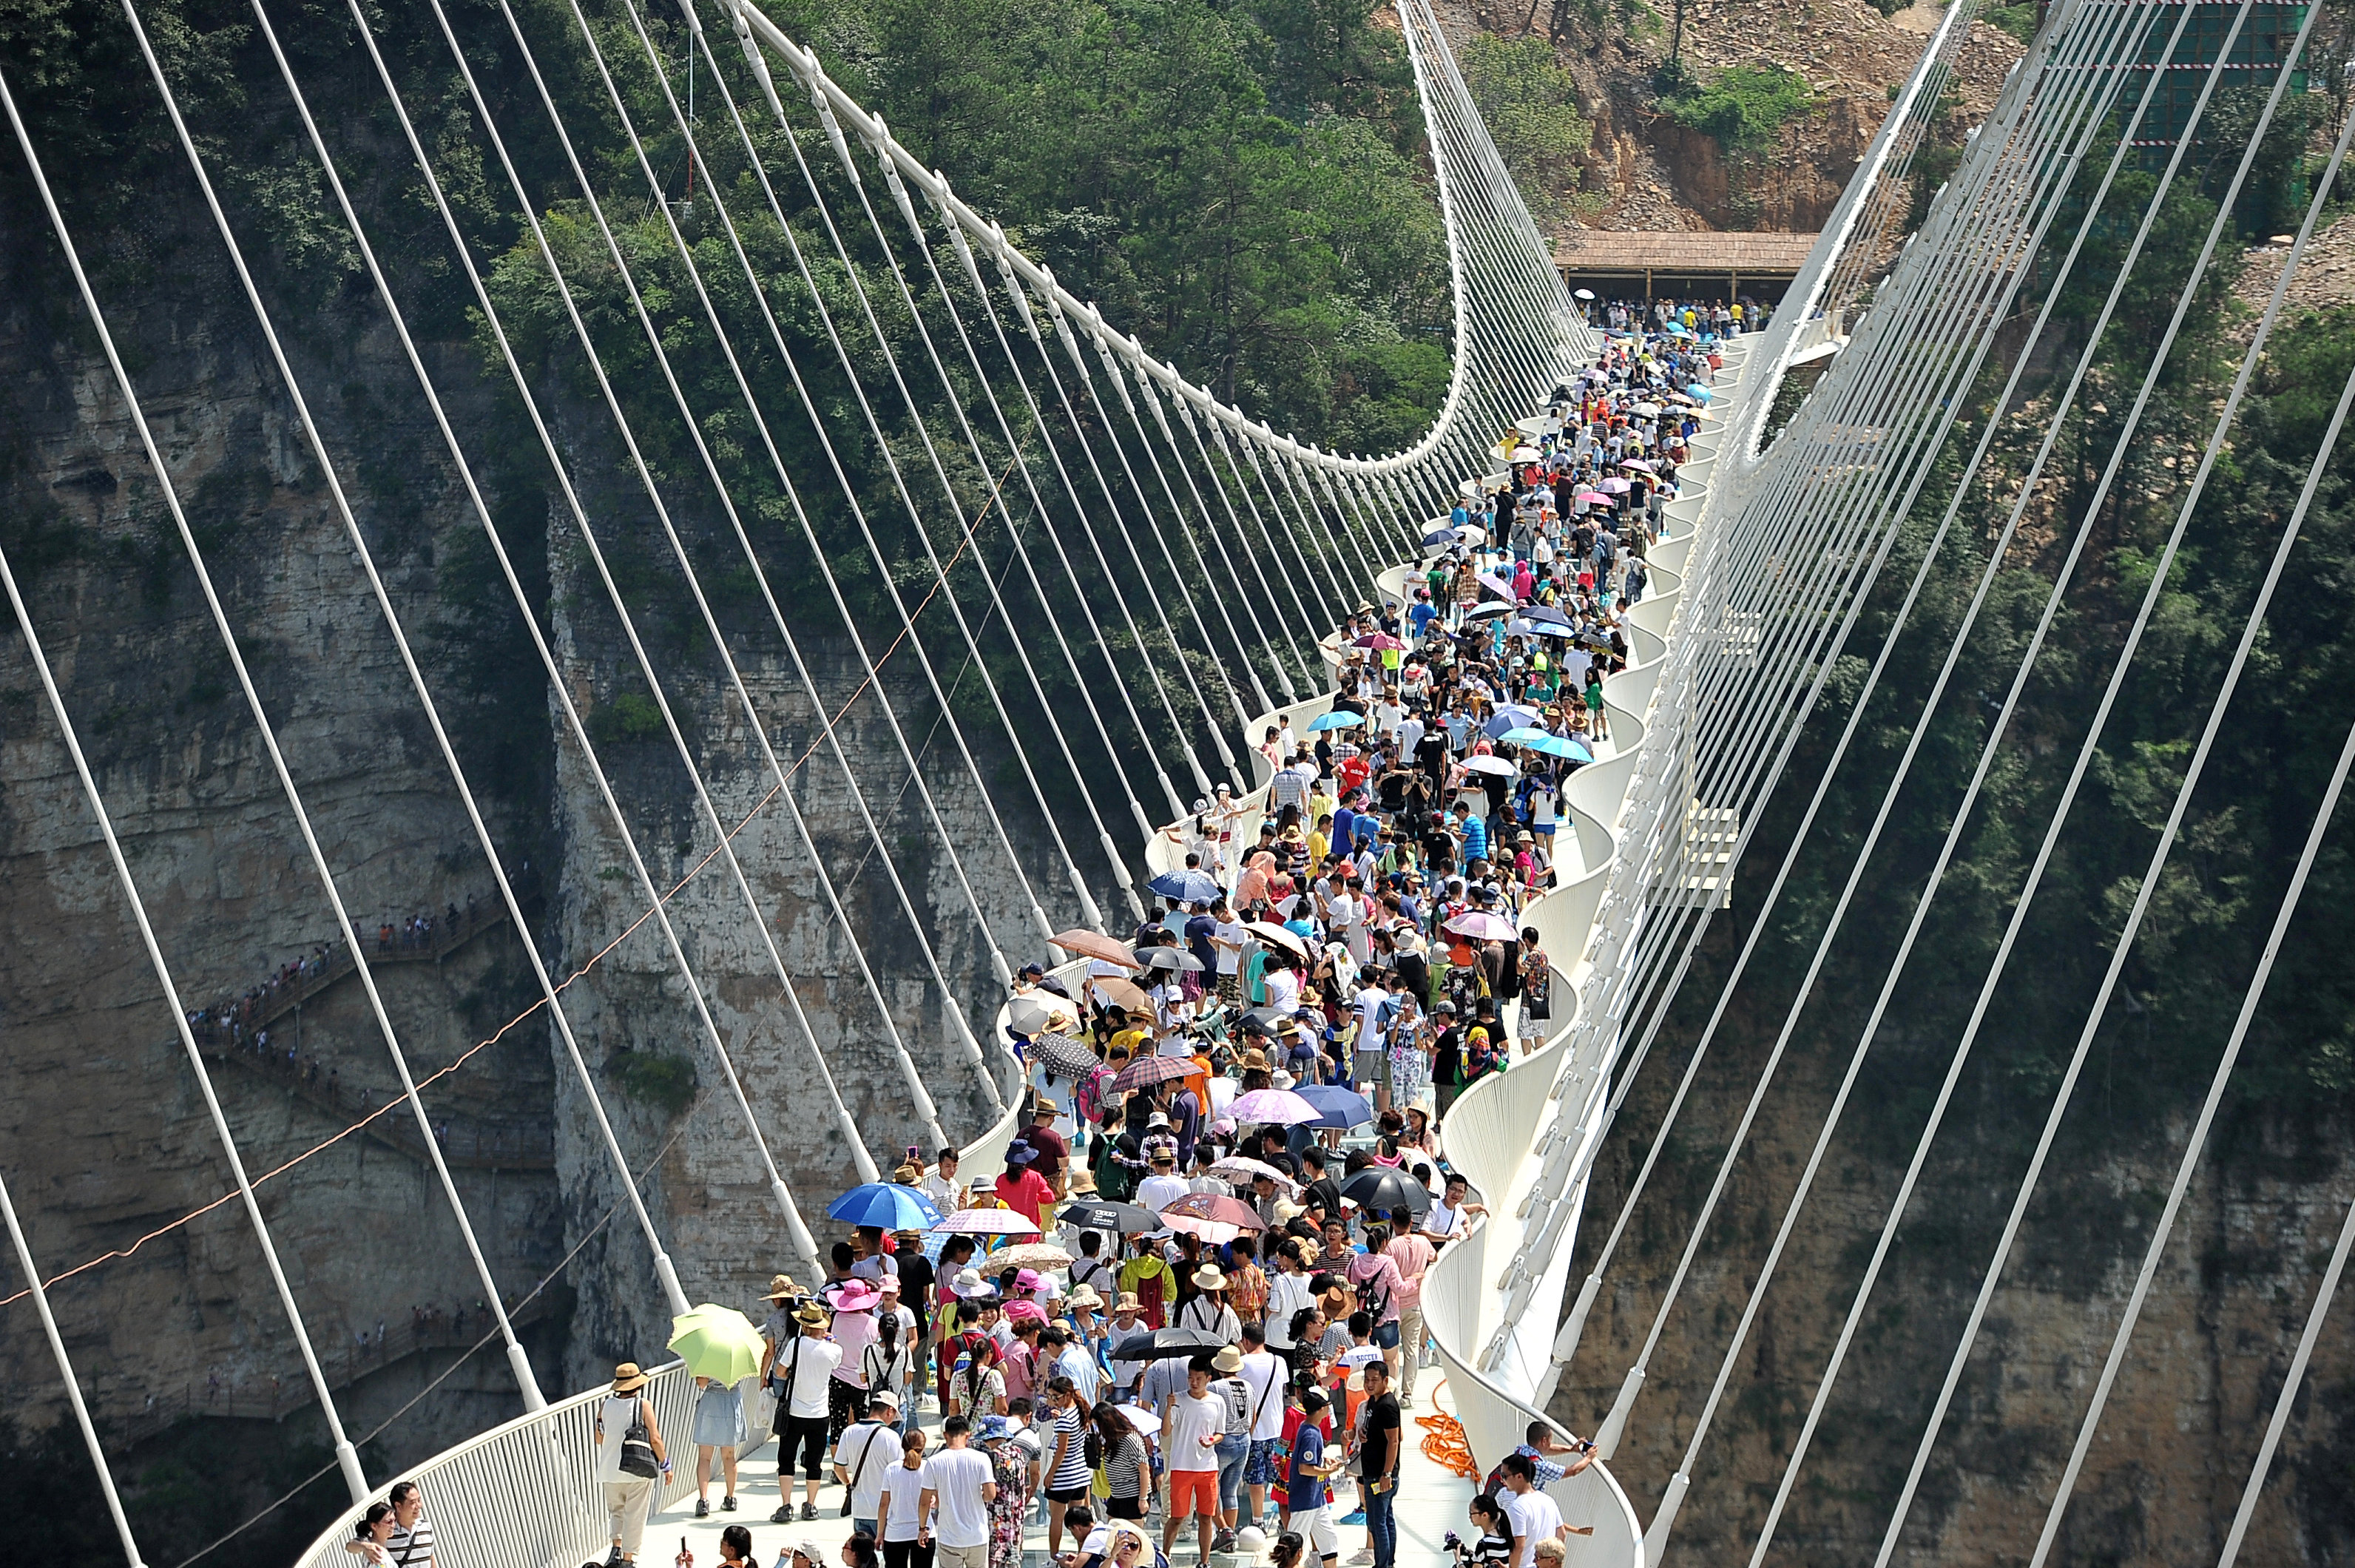 该玻璃桥每日的接客上限为8000人。-路透社-